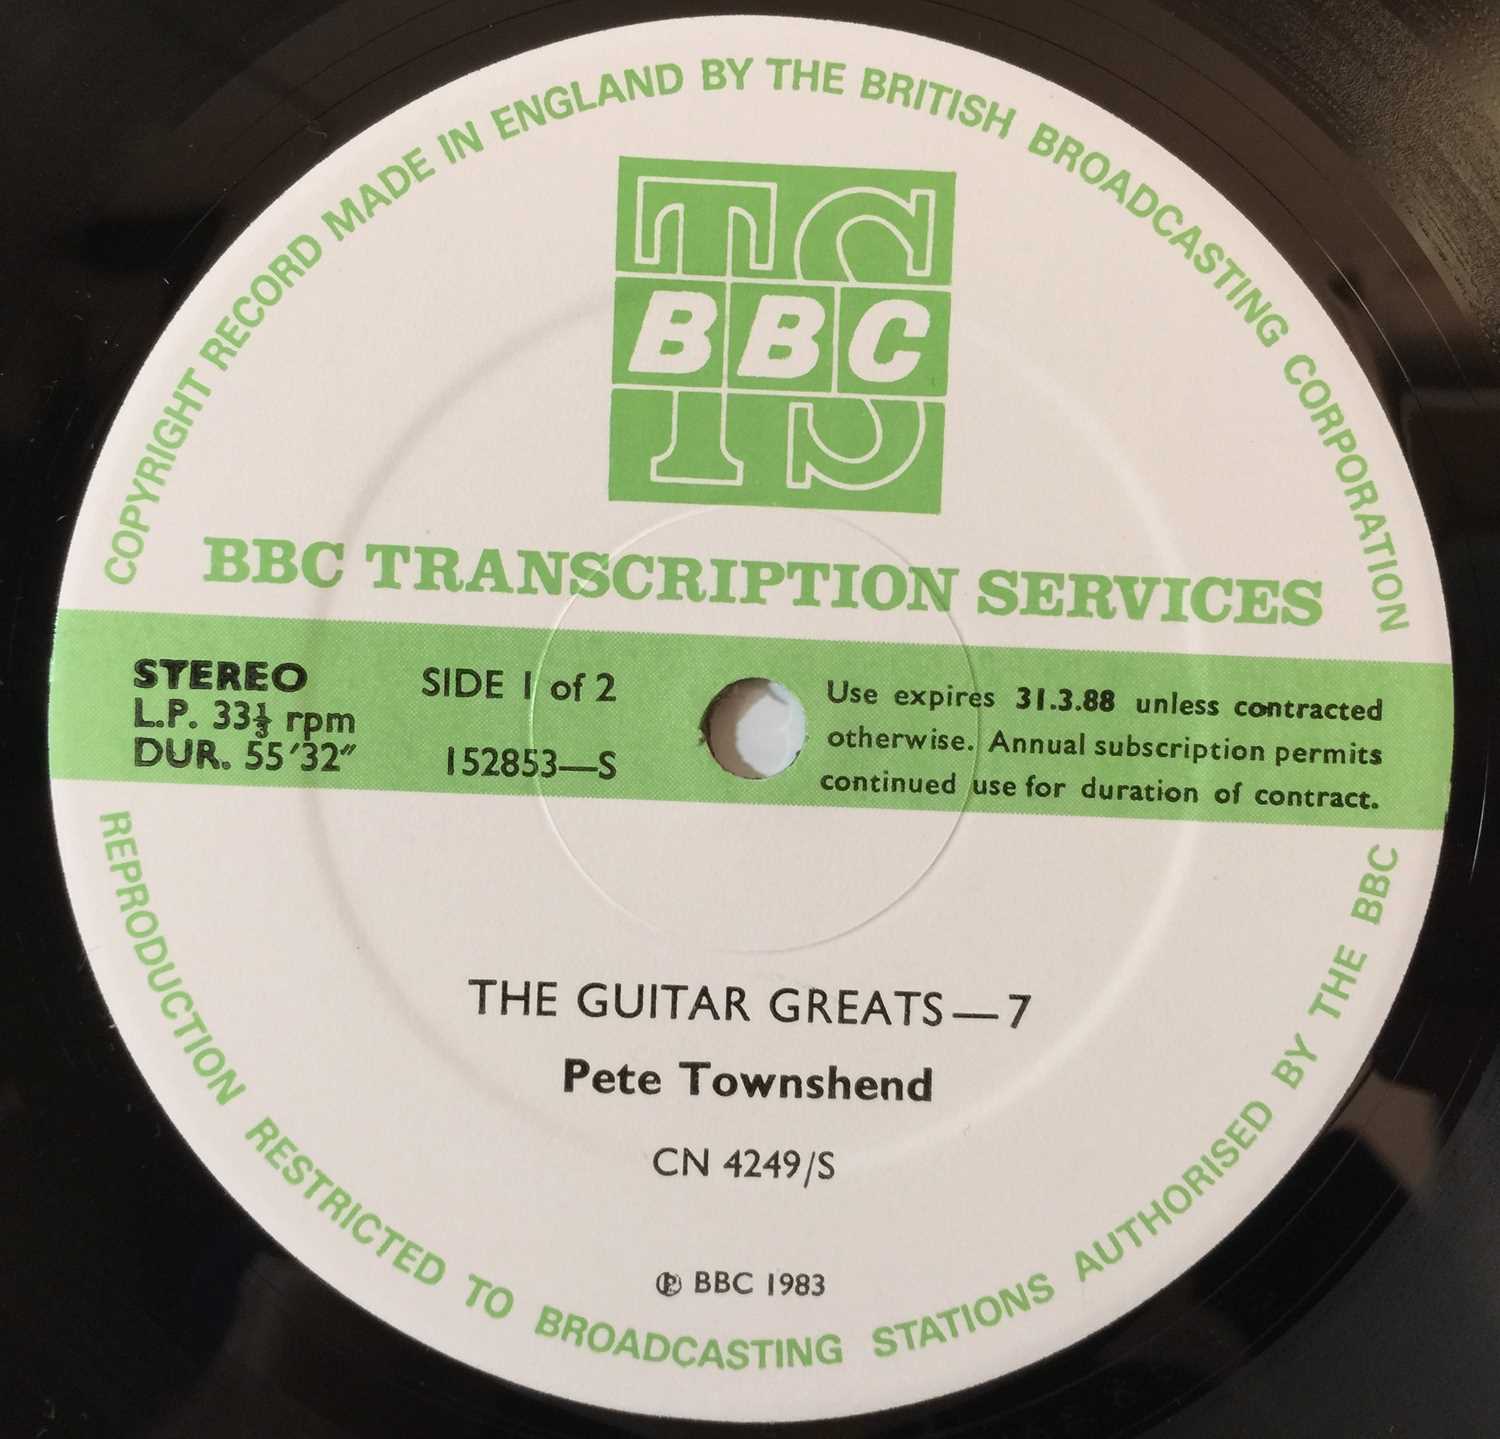 Lot 1171 - PETE TOWNSHEND/ JIMMY PAGE - GUITAR GREATS 7 + 8 - BBC TRANSCRIPTION LP (152853-S)